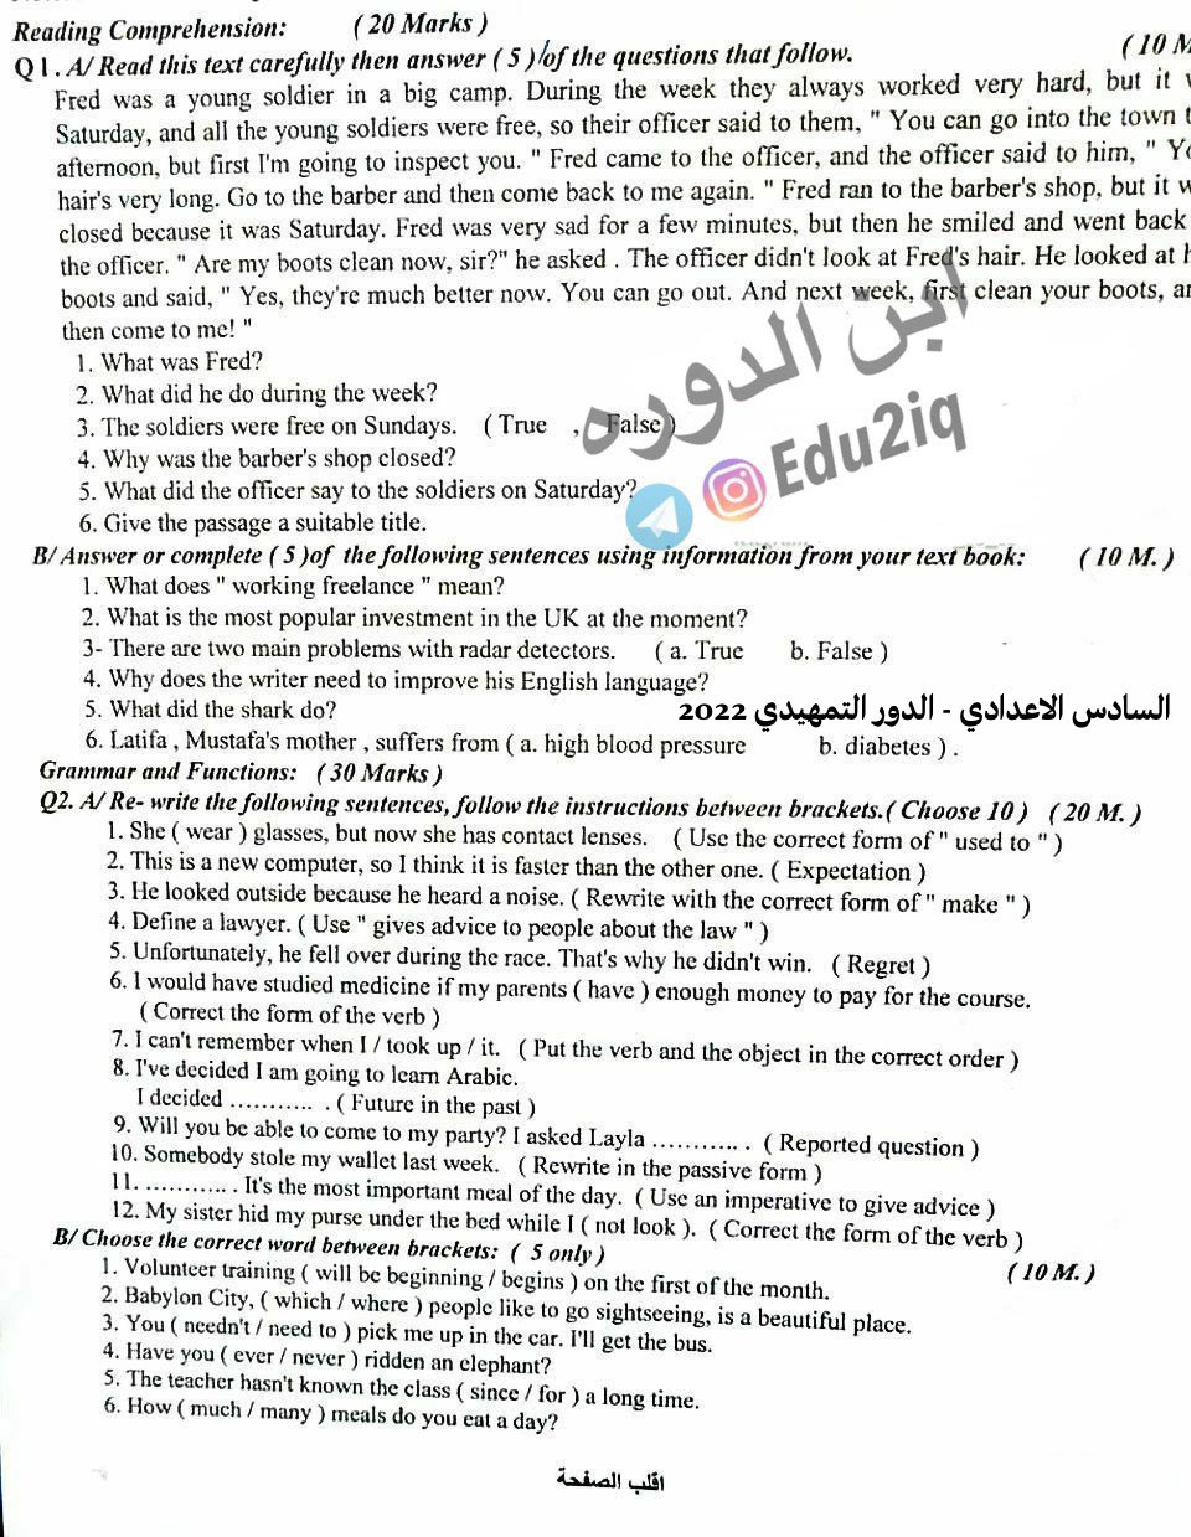 اسئلة مادة اللغة الانكليزية للصف السادس الإعدادي الدور التمهيدي 2022 مع الاجوبة